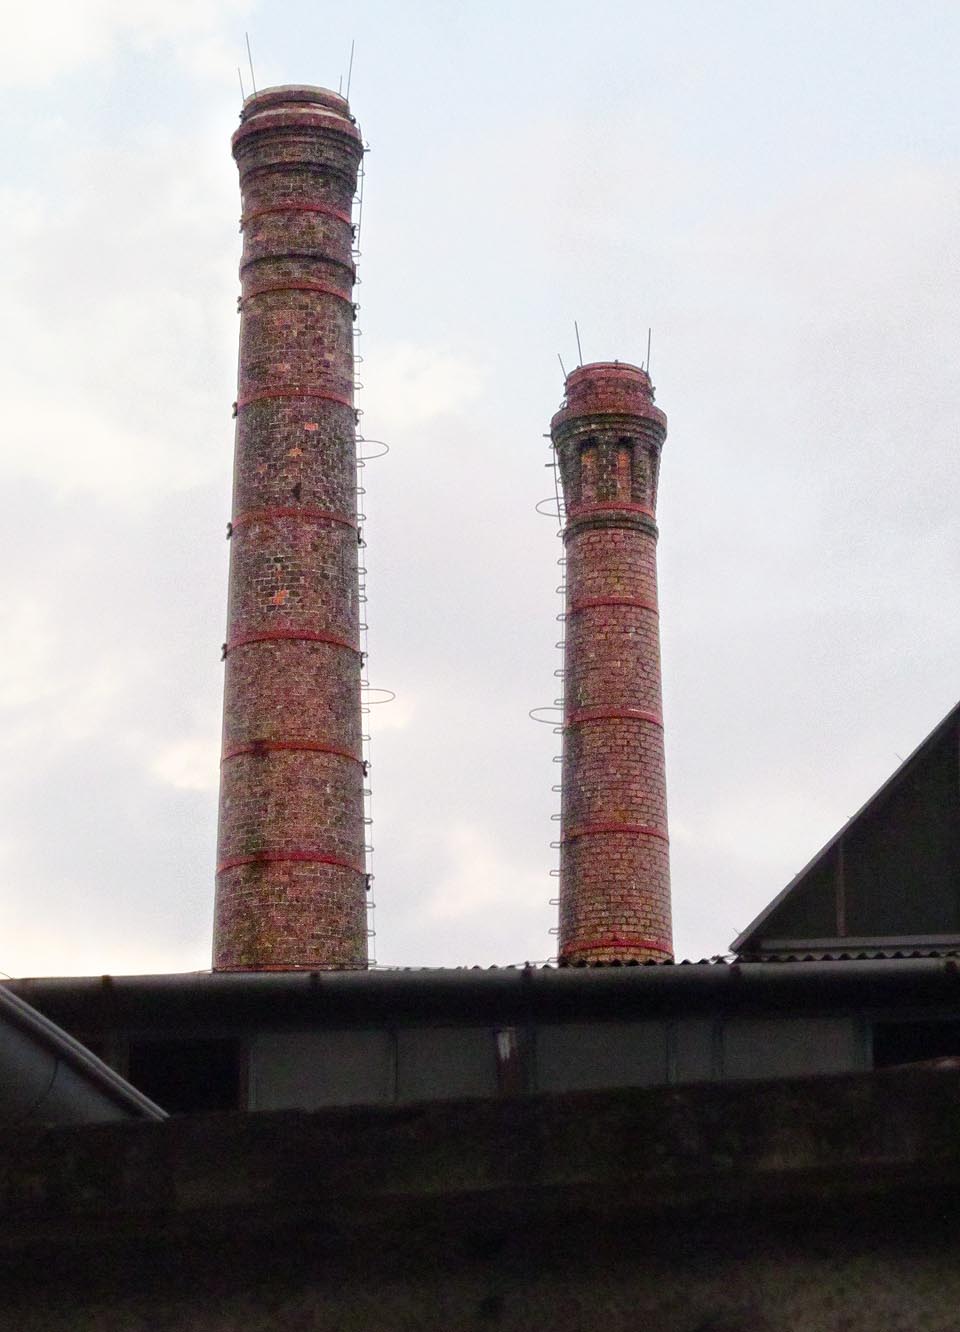 Dvojice komínů s ozdobnými hlavicemi je jedním z průmyslových klenotů dolního Brna.